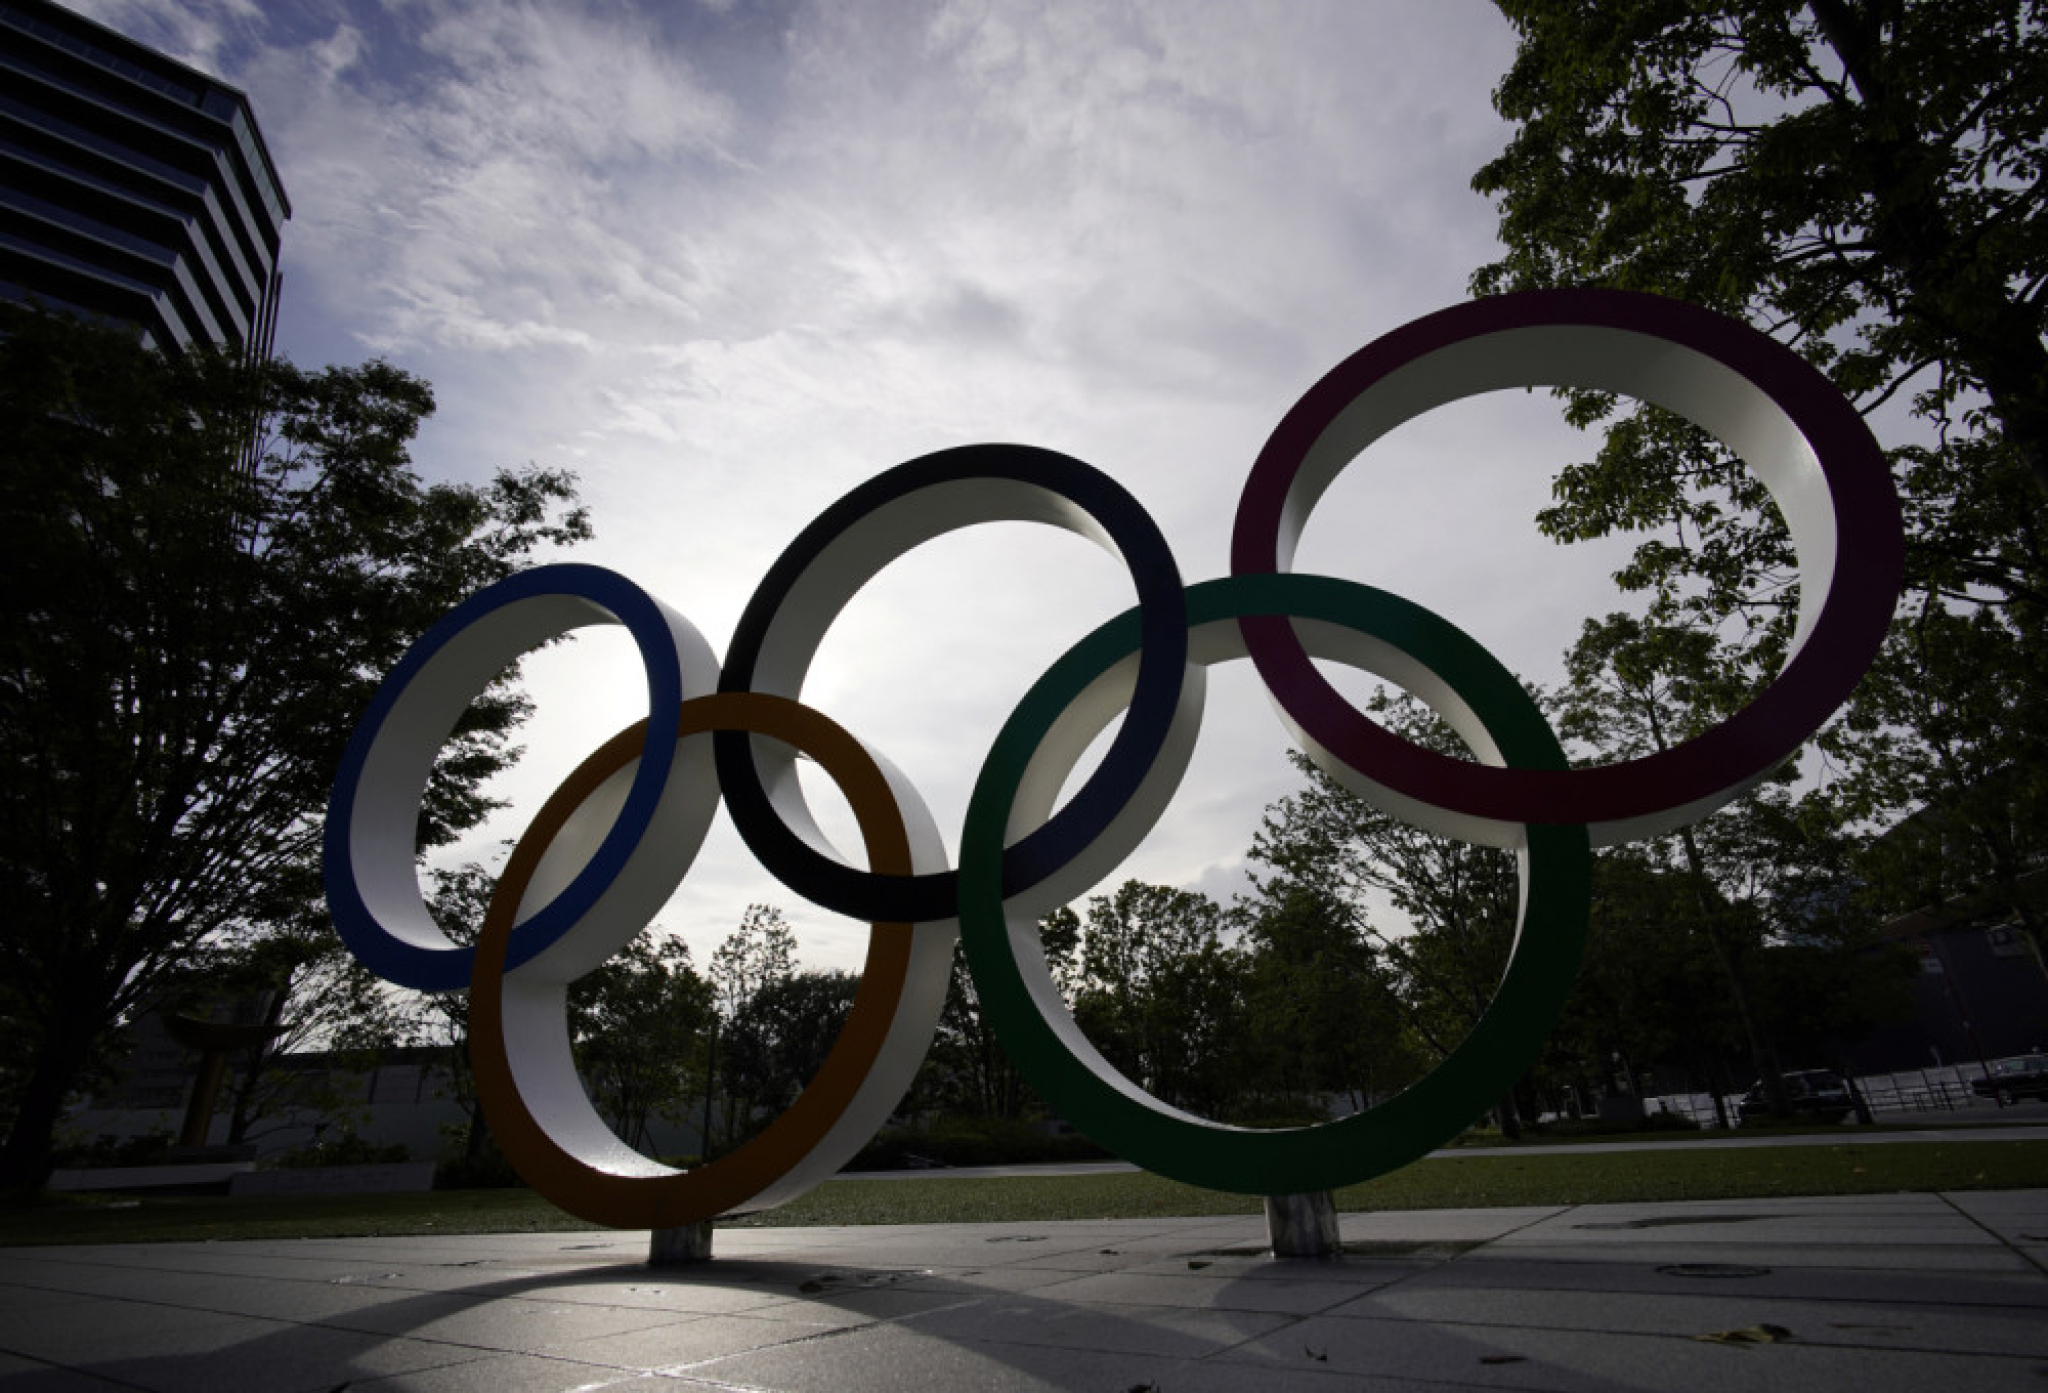 Olimpijski krugovi - logo olimpijskih igara